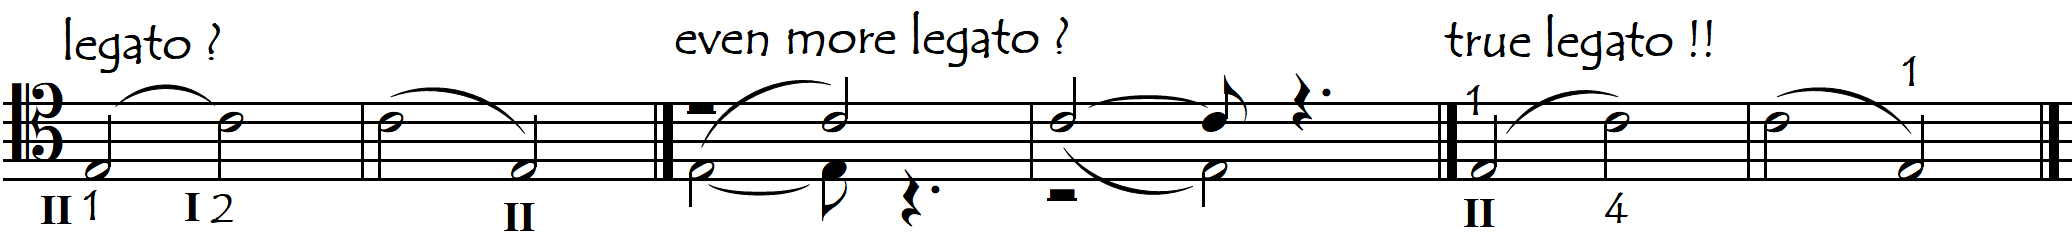 legato across or updown